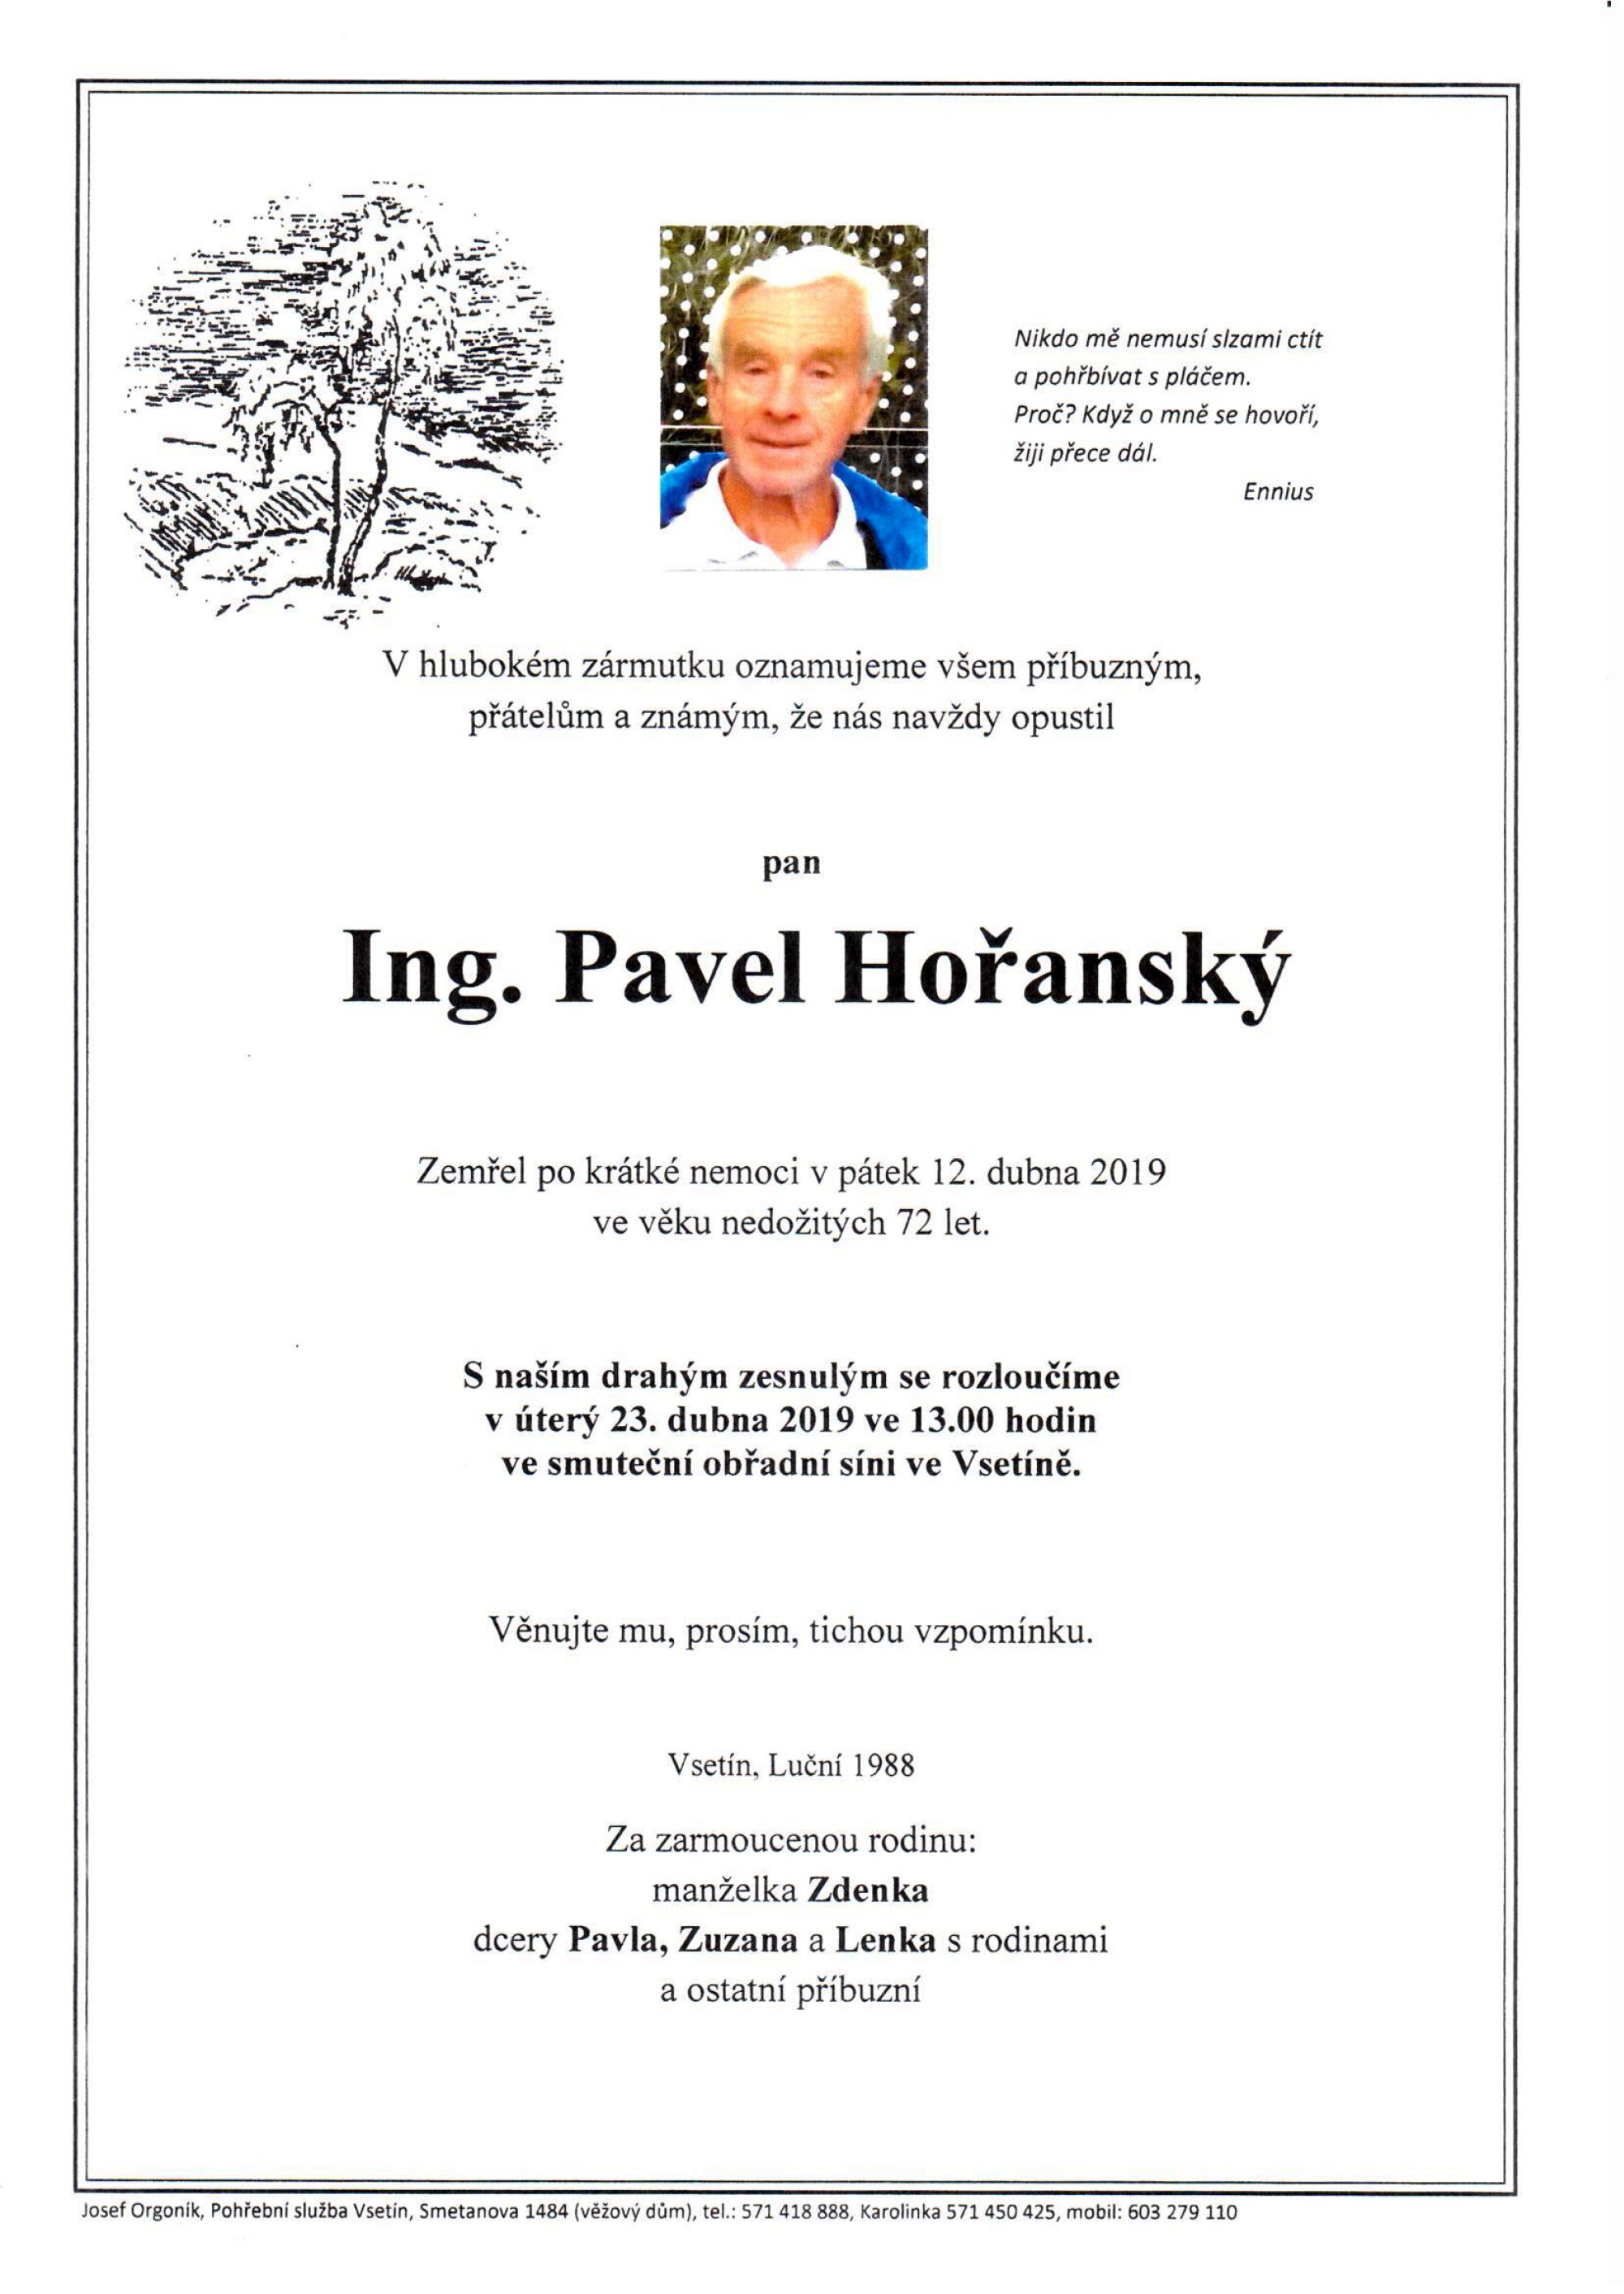 Ing. Pavel Hořanský